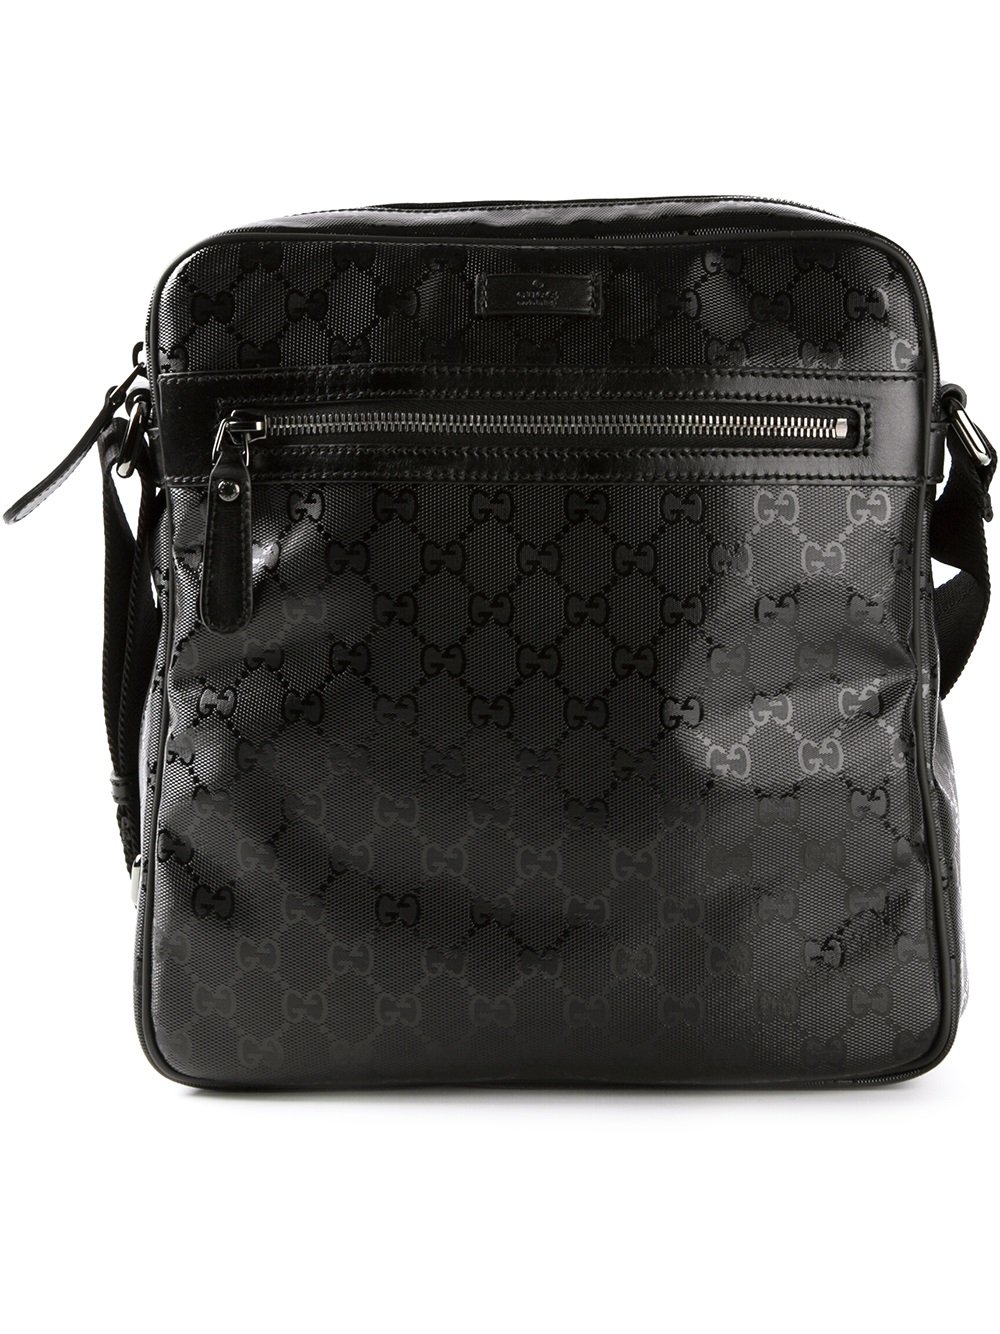 Gucci Monogram Shoulder Bag in Black for Men - Lyst